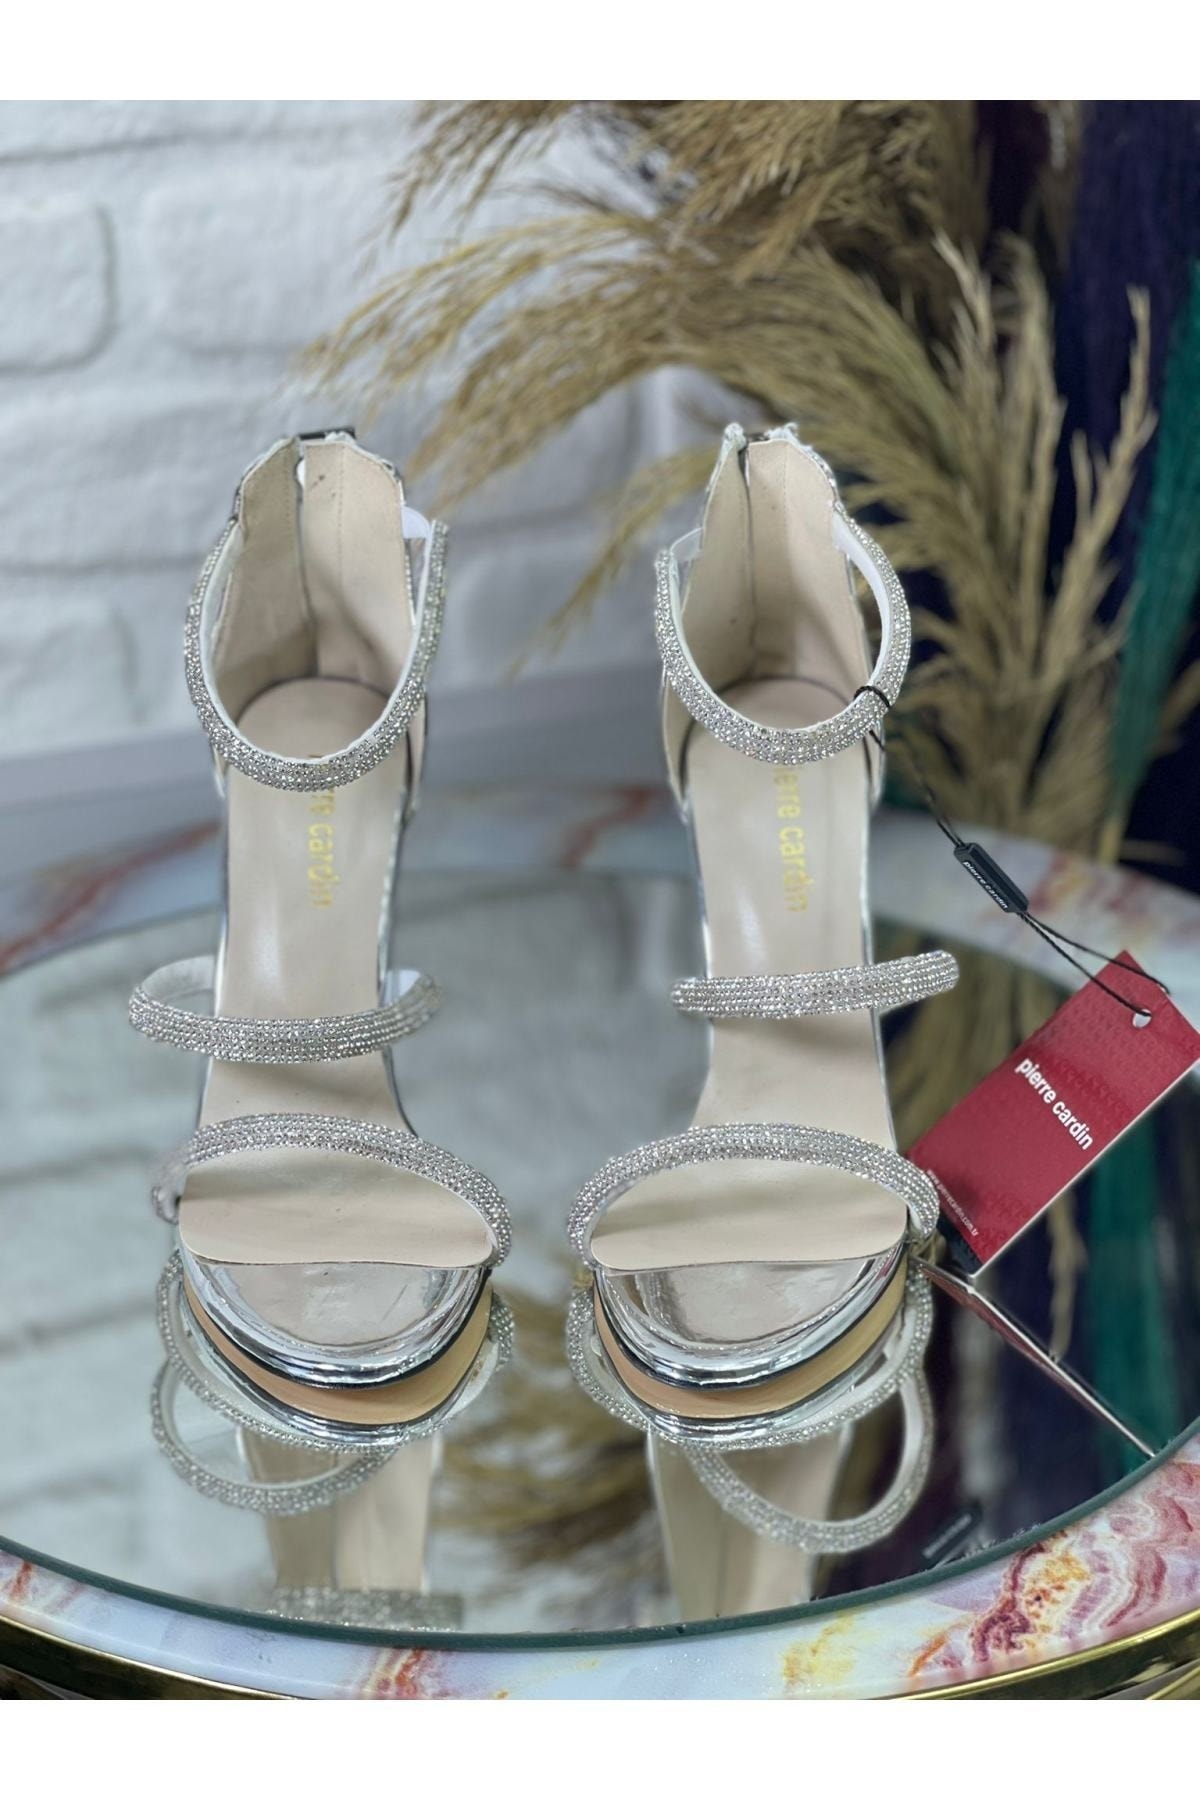 Pierre Cardin Gümüş Bantlı Taşlı Kadın Topuklu Abiye Ayakkabı